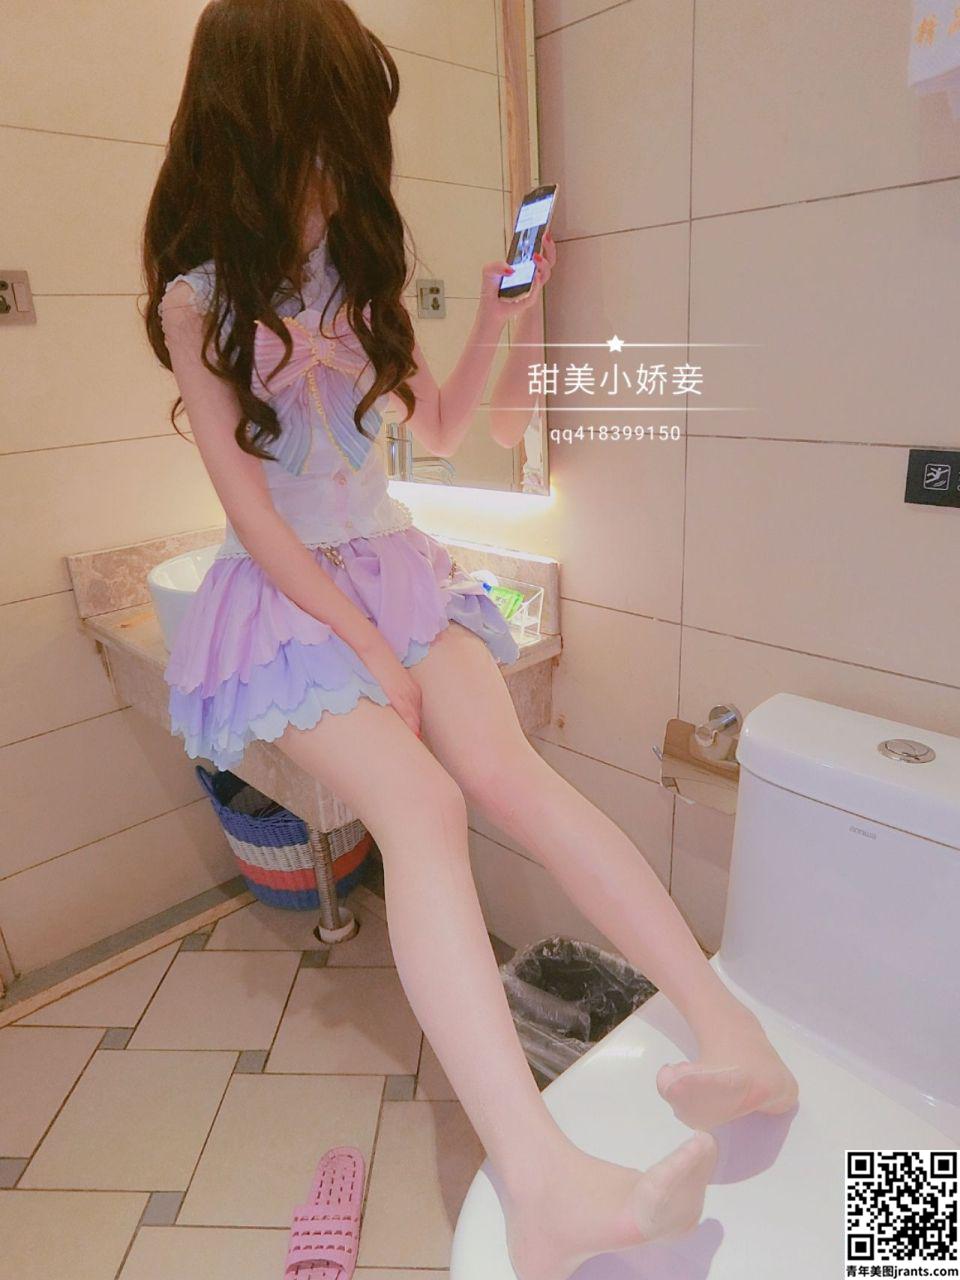 甜美小娇妾 &#8211; Cute loli girl with a mask show her pussy (28P)